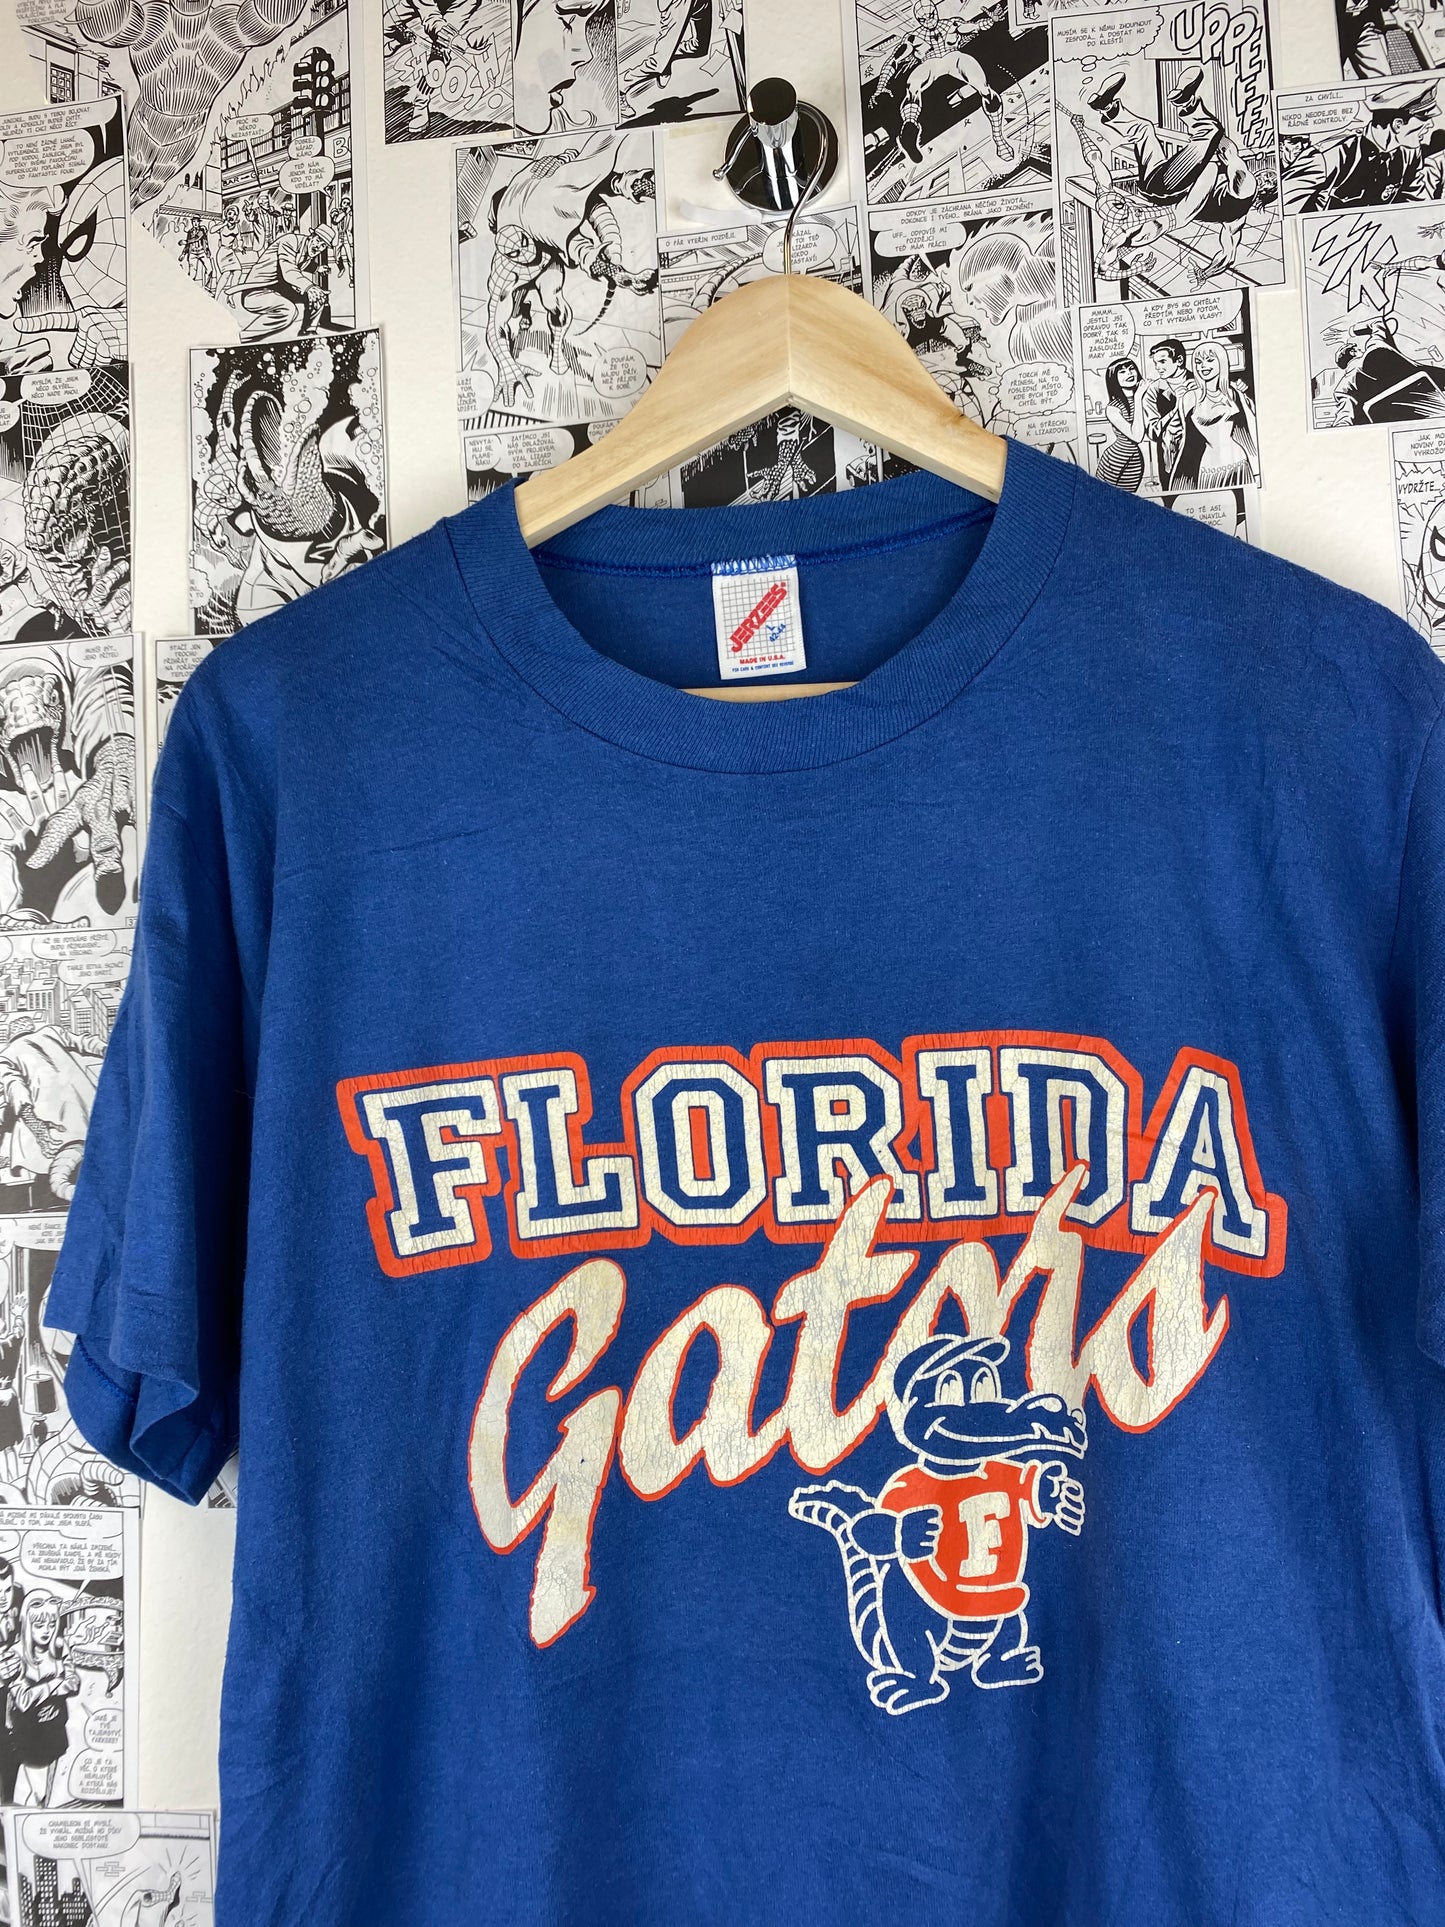 Vintage Florida Gators 90s t-shirt - size L